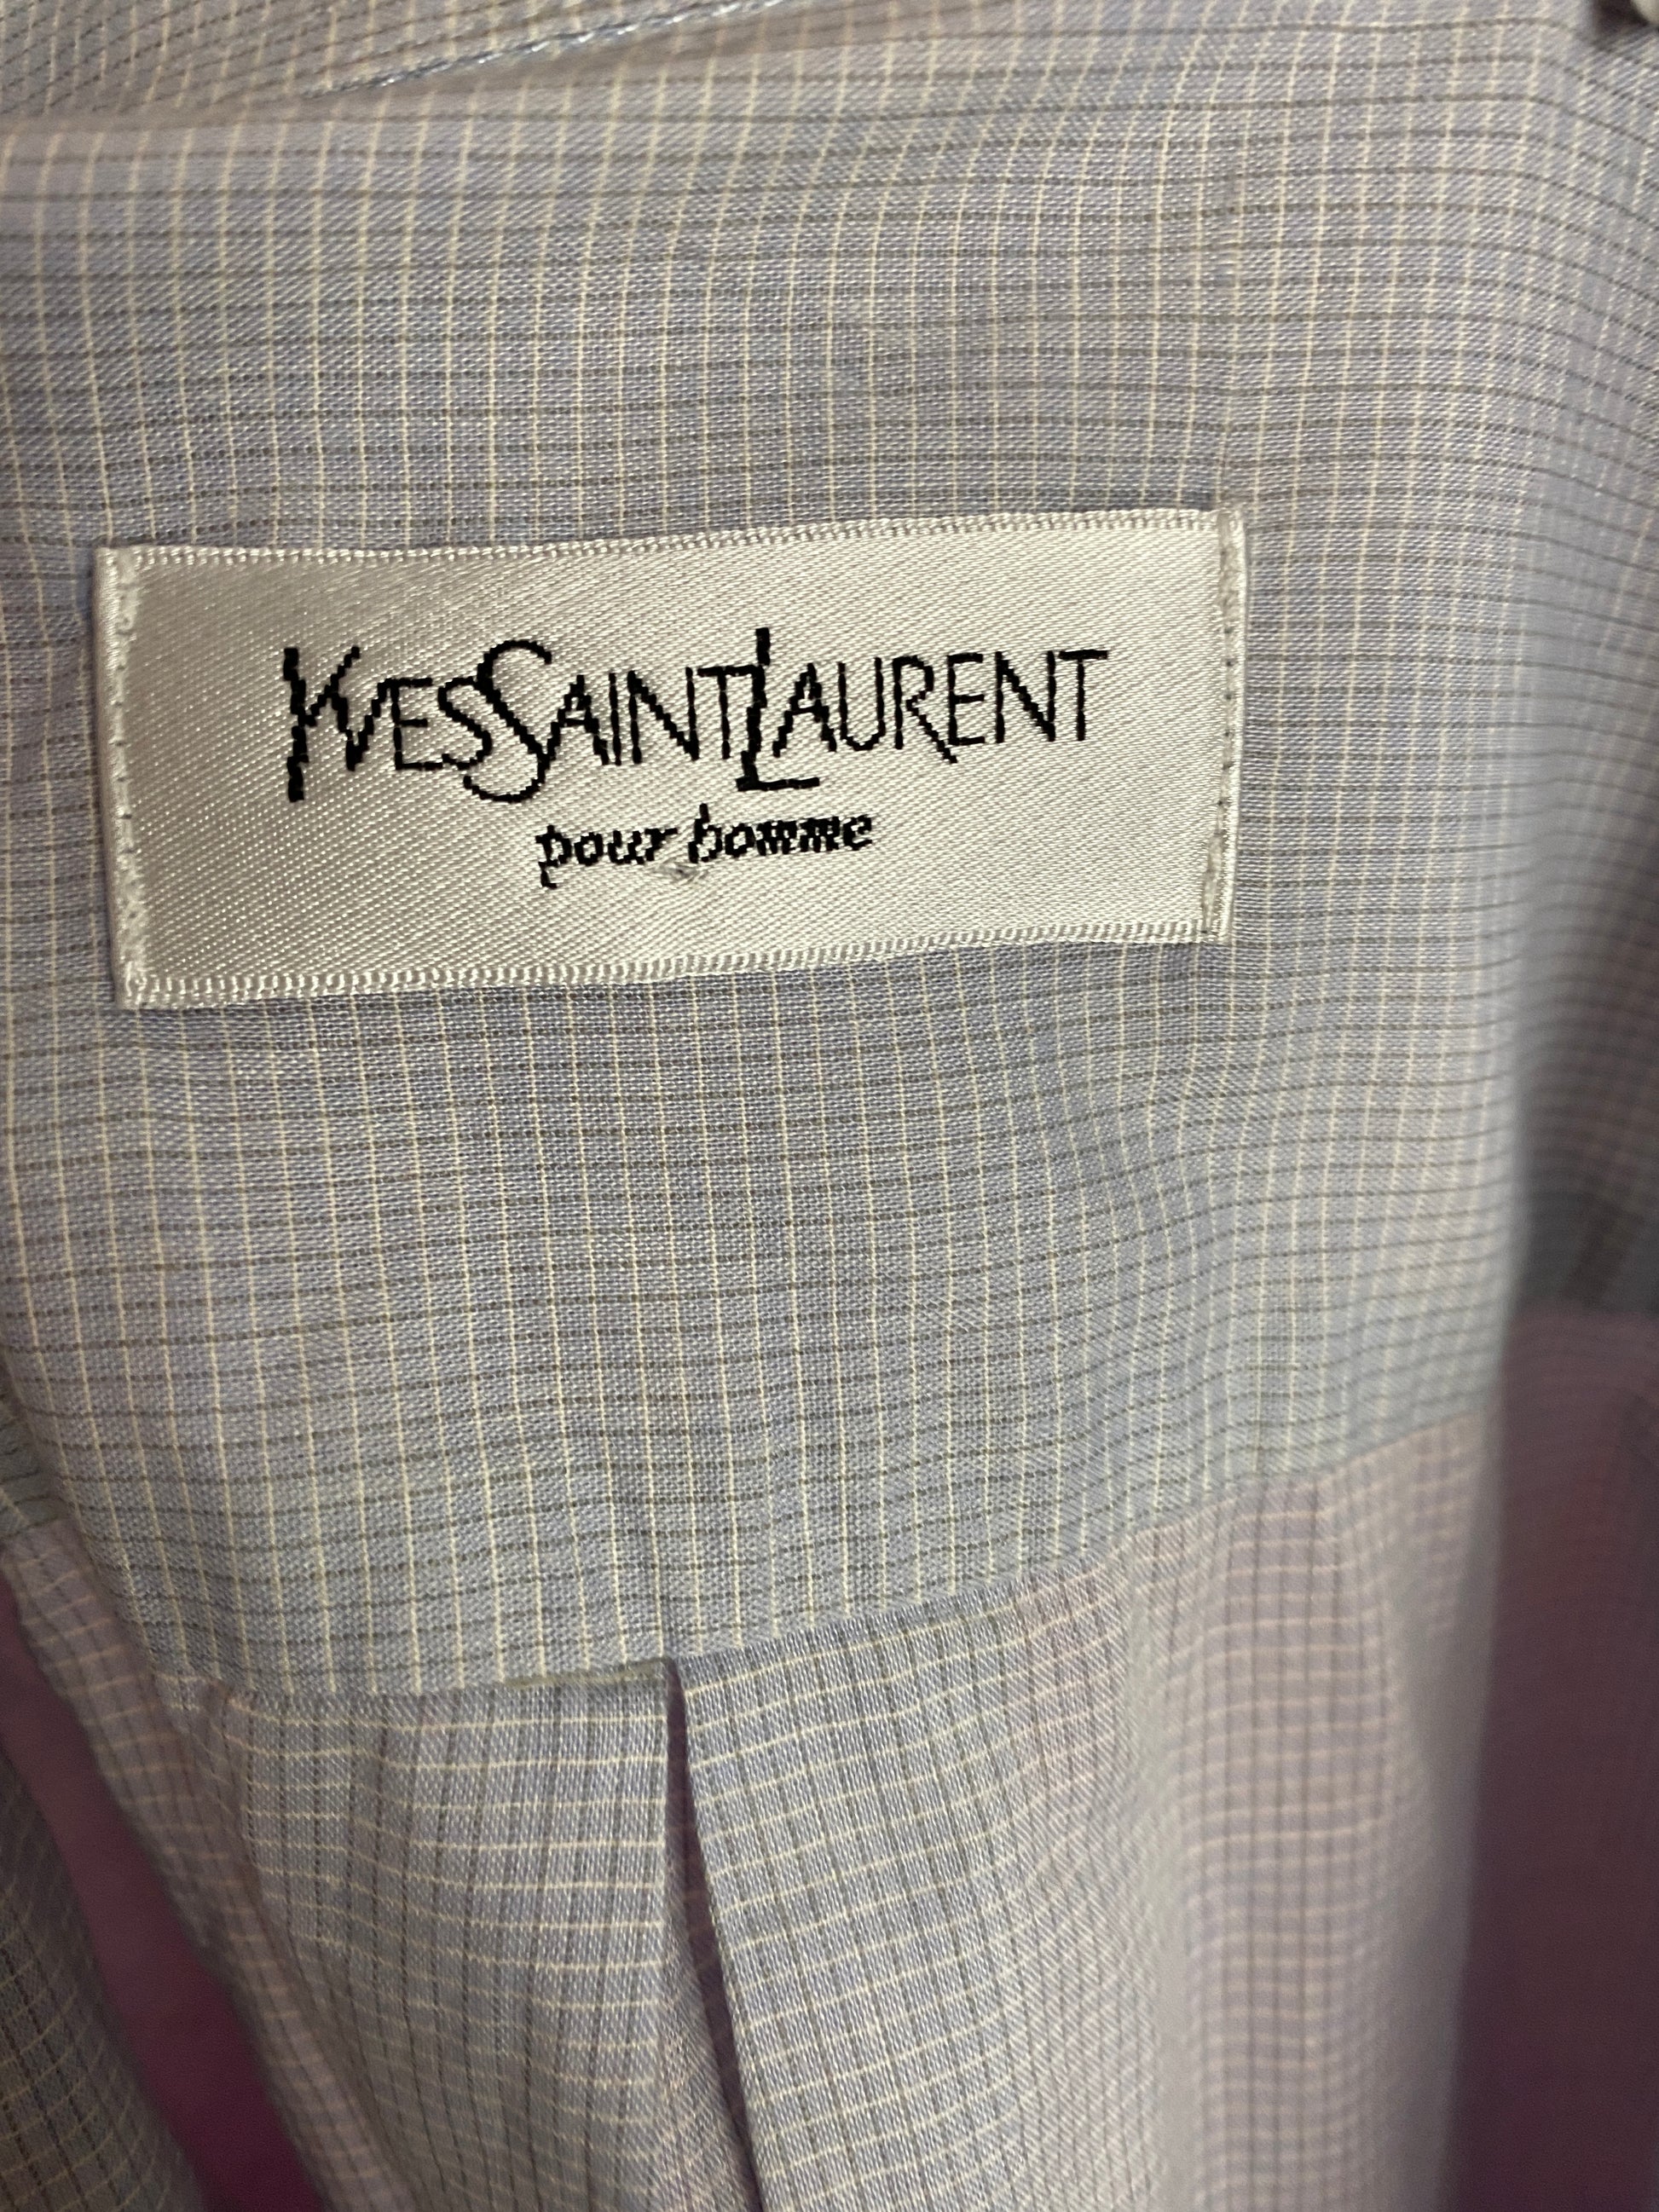 Yves Saint Laurent Vintage Men's Short Sleeve Shirt - XL Blue Cotton